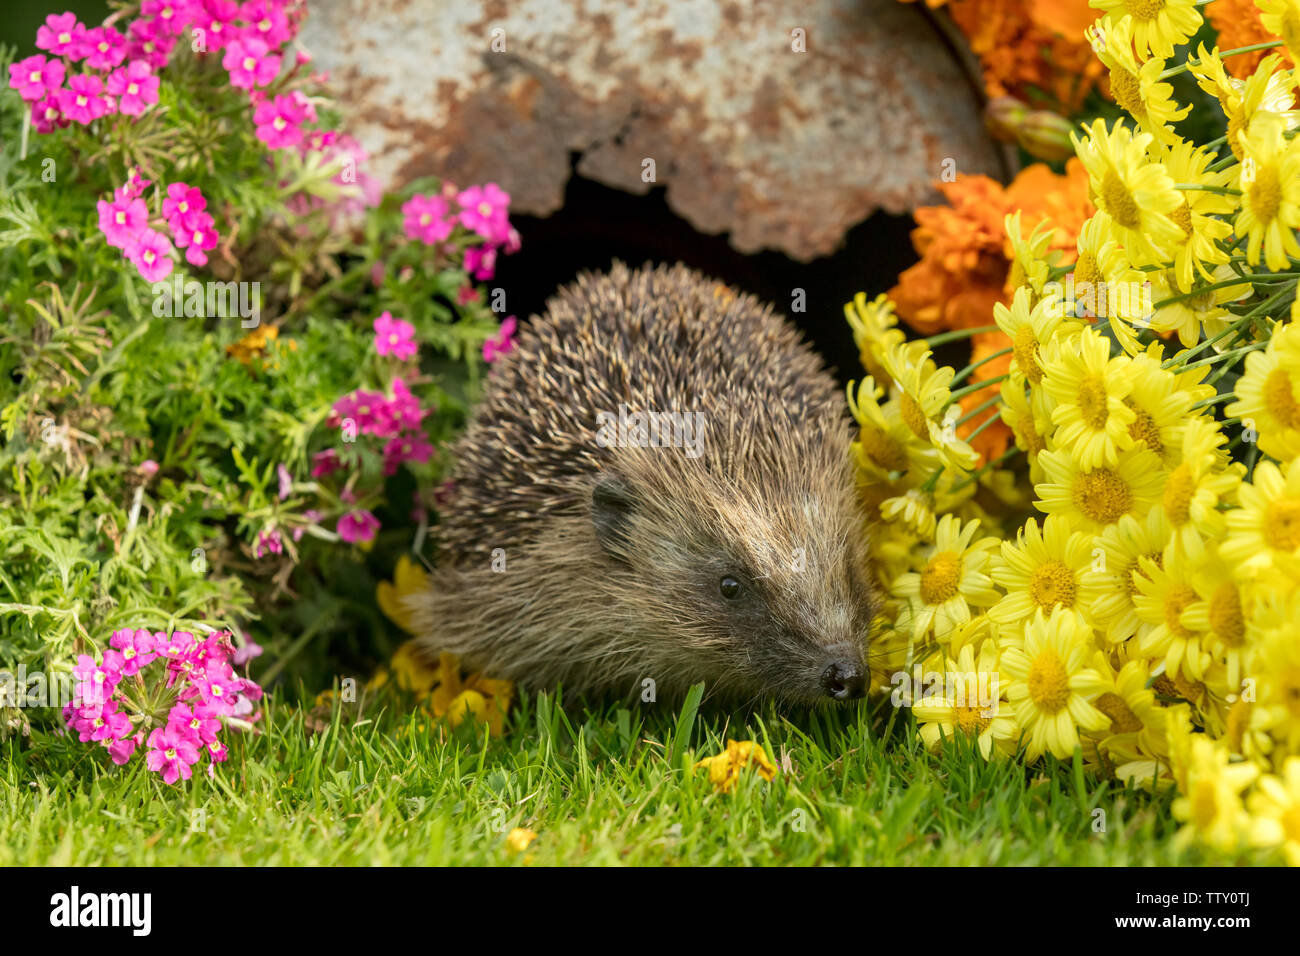 Riccio, (nome scientifico: Erinaceus europaeus) selvatica, nativo, hedgehog europea nel giardino naturale habitat con colorati fiori d'estate. Posizione orizzontale Foto Stock